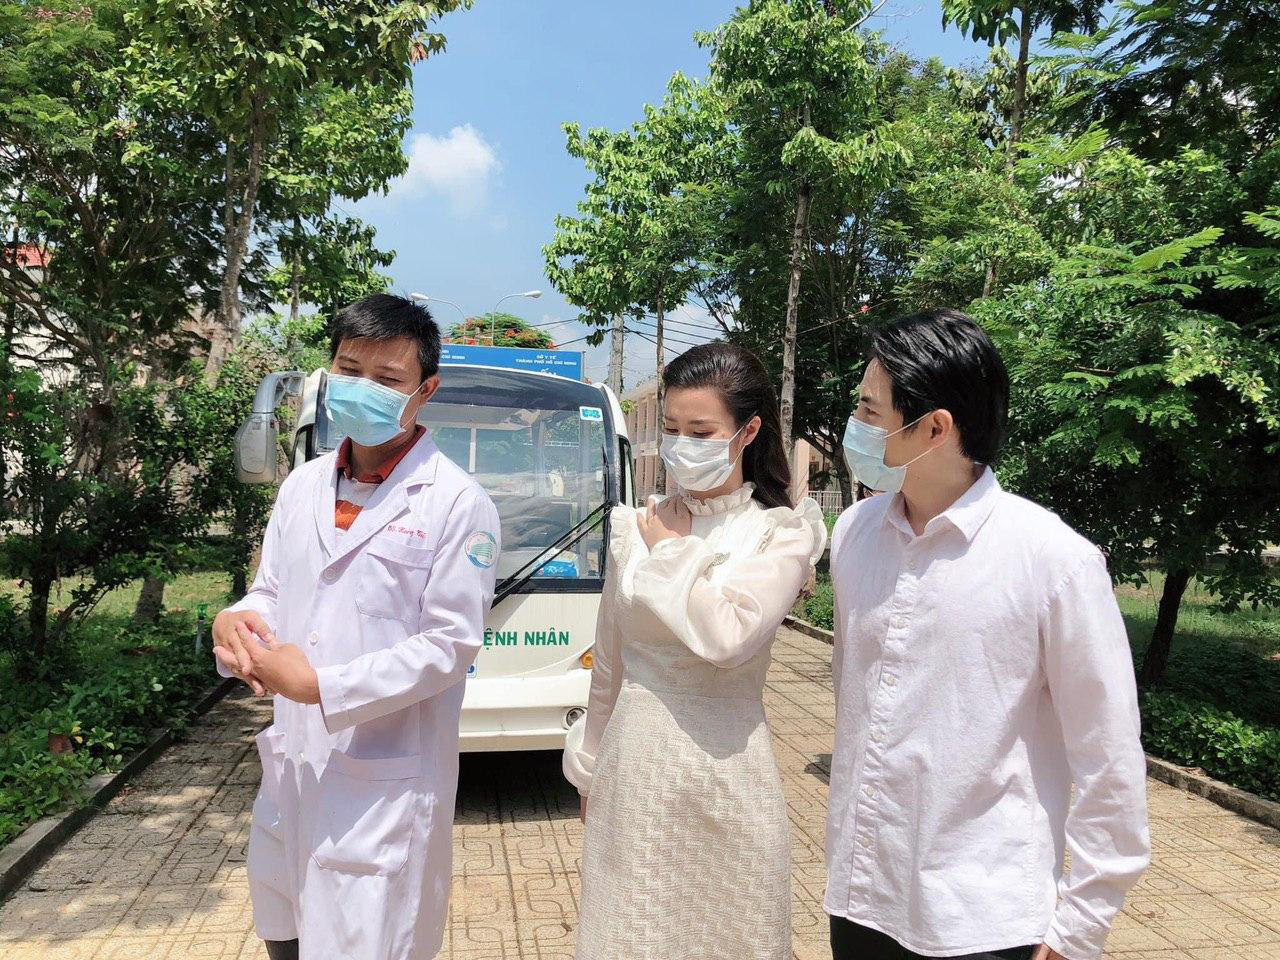 Đang bầu bì tháng thứ 4, Đông Nhi vẫn cùng Ông Cao Thắng đi bệnh viện Dã Chiến Củ Chi thăm hỏi đội ngũ y bác sĩ - Ảnh 2.